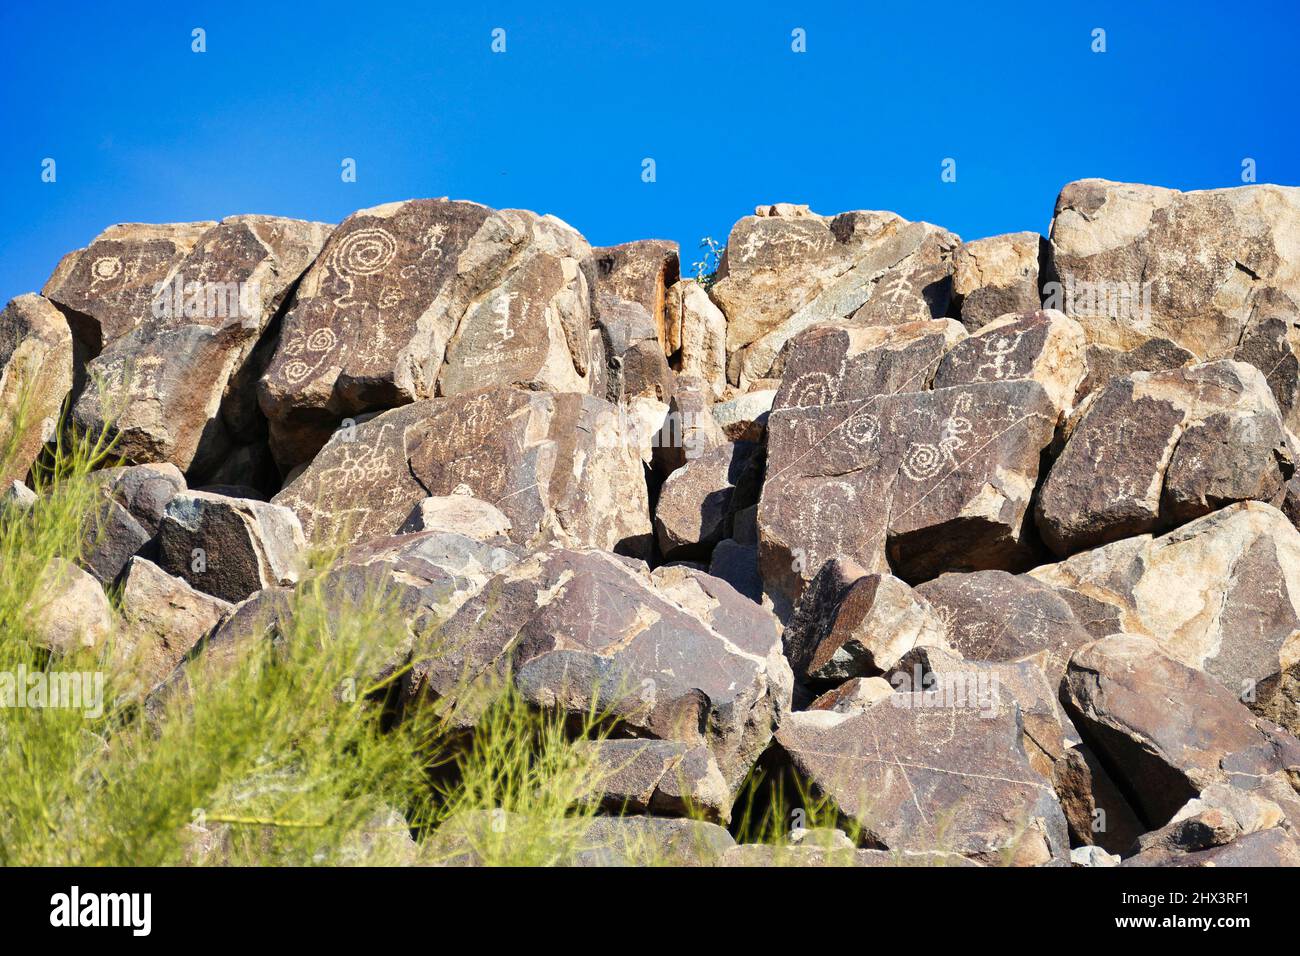 Pétroglyphes de Hohokam, de conception essentiellement abstraite, au site de signal Hill Petroglyph, dans le parc national de Saguaro (ouest), près de Tucson, Arizona, États-Unis Banque D'Images